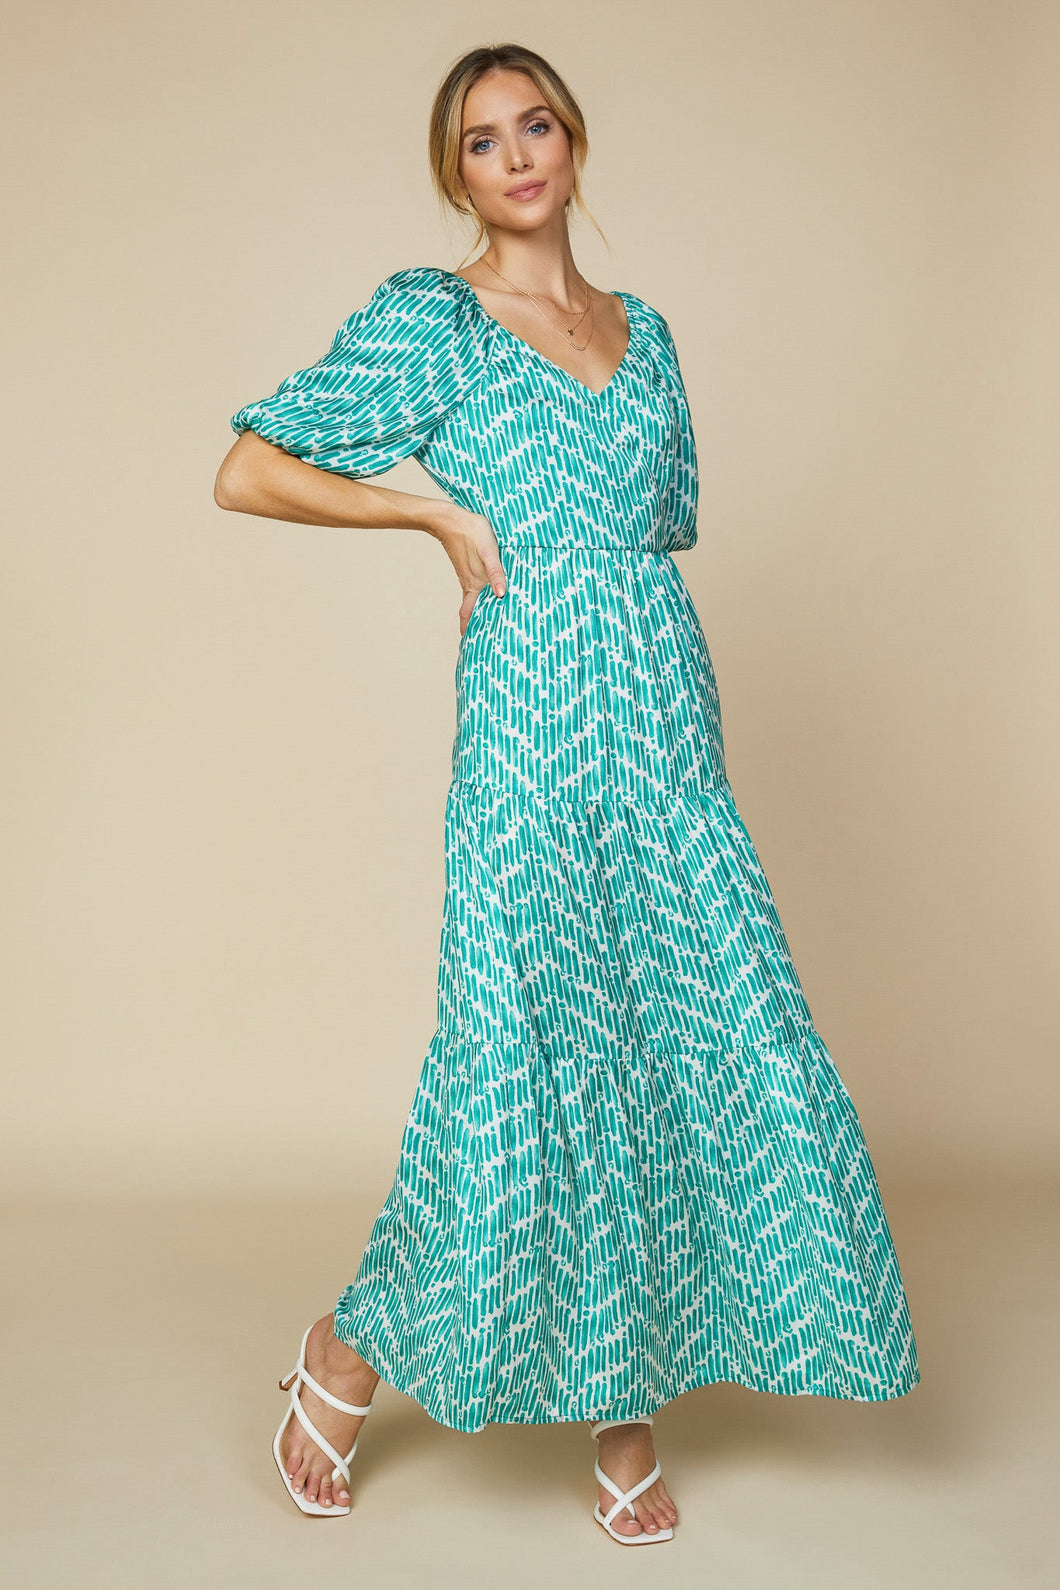 Watercolor chevron maxi dress